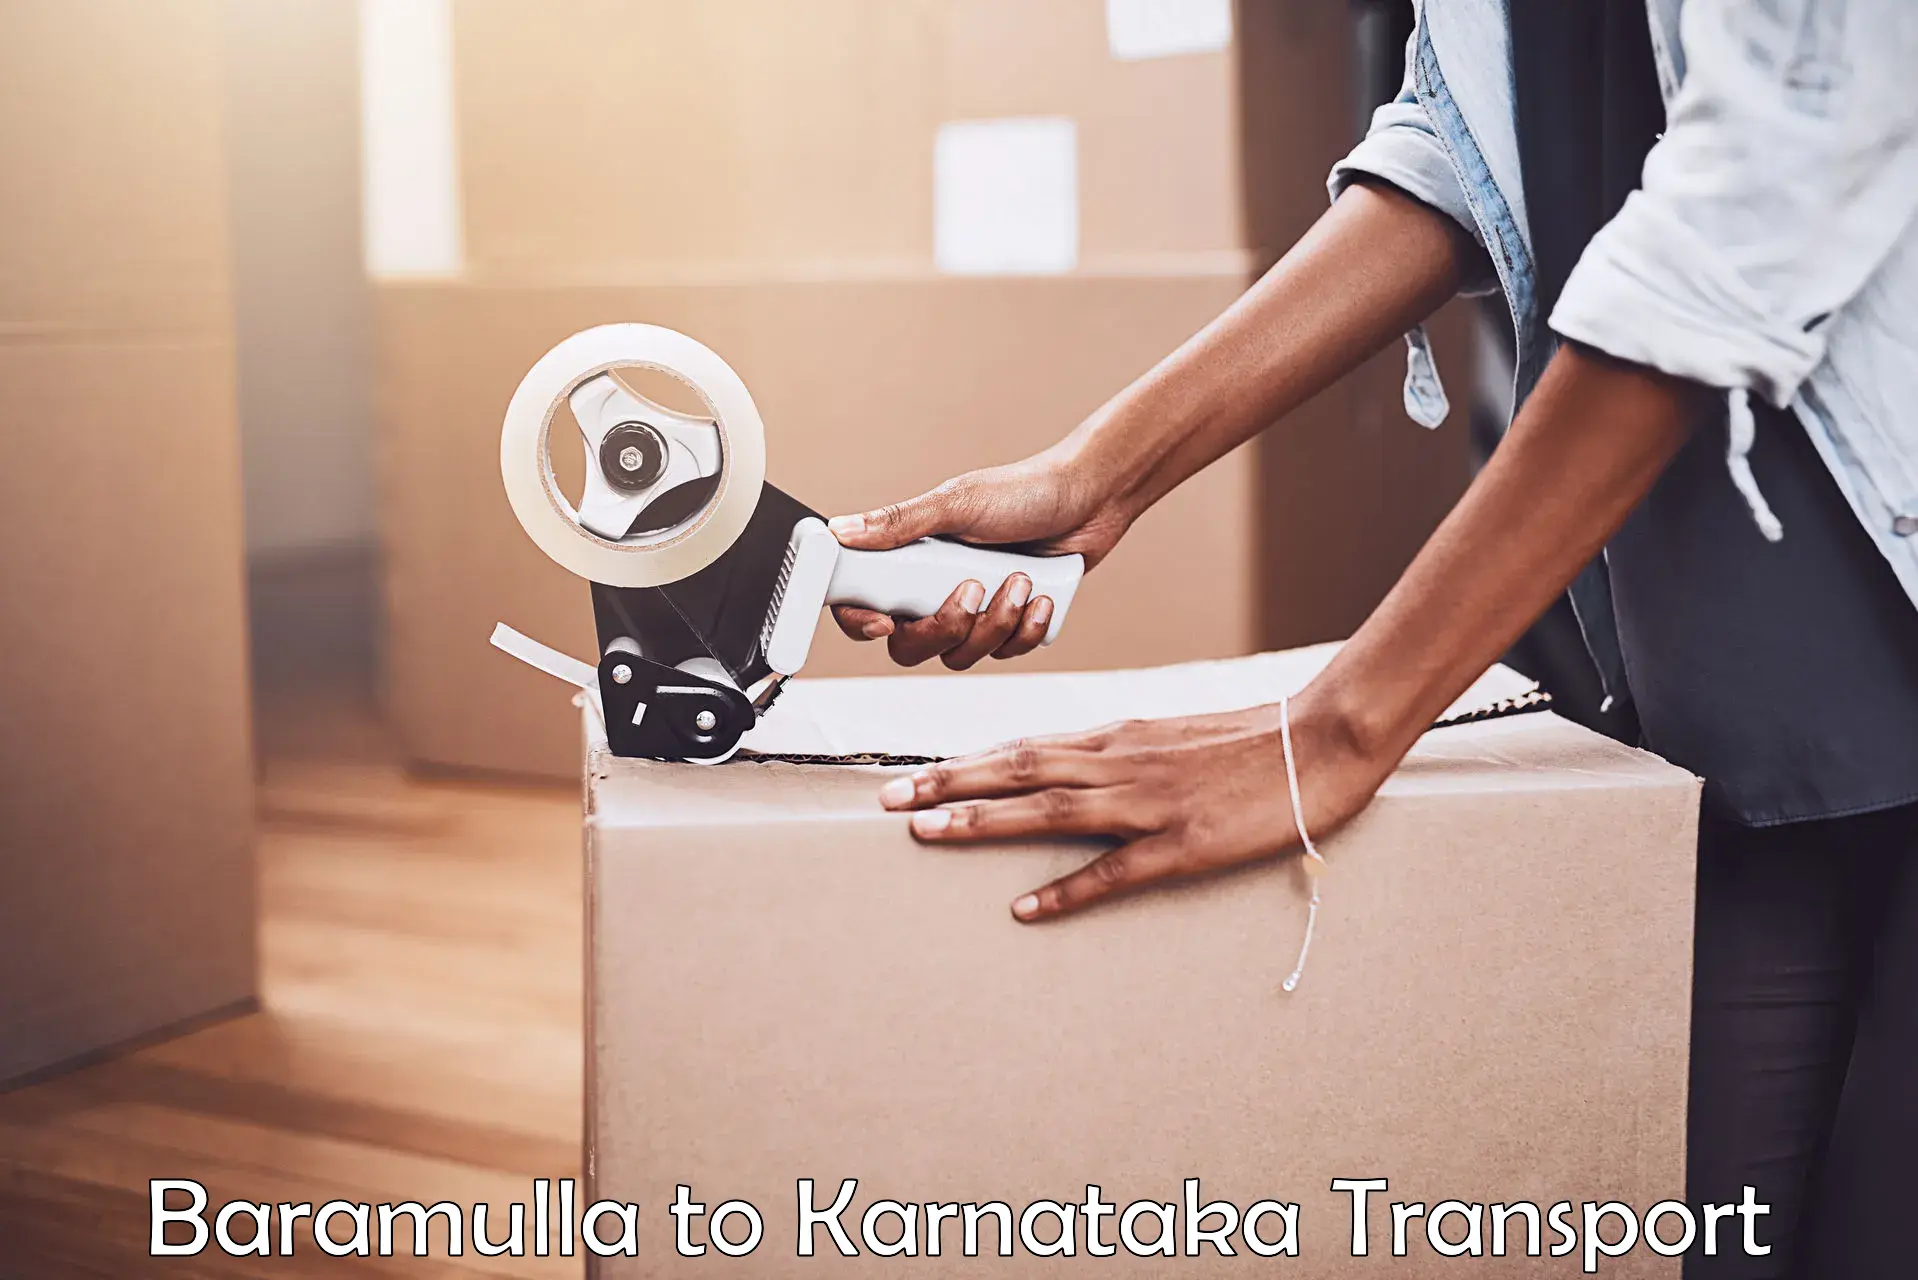 Container transport service Baramulla to Chikkanayakanahalli